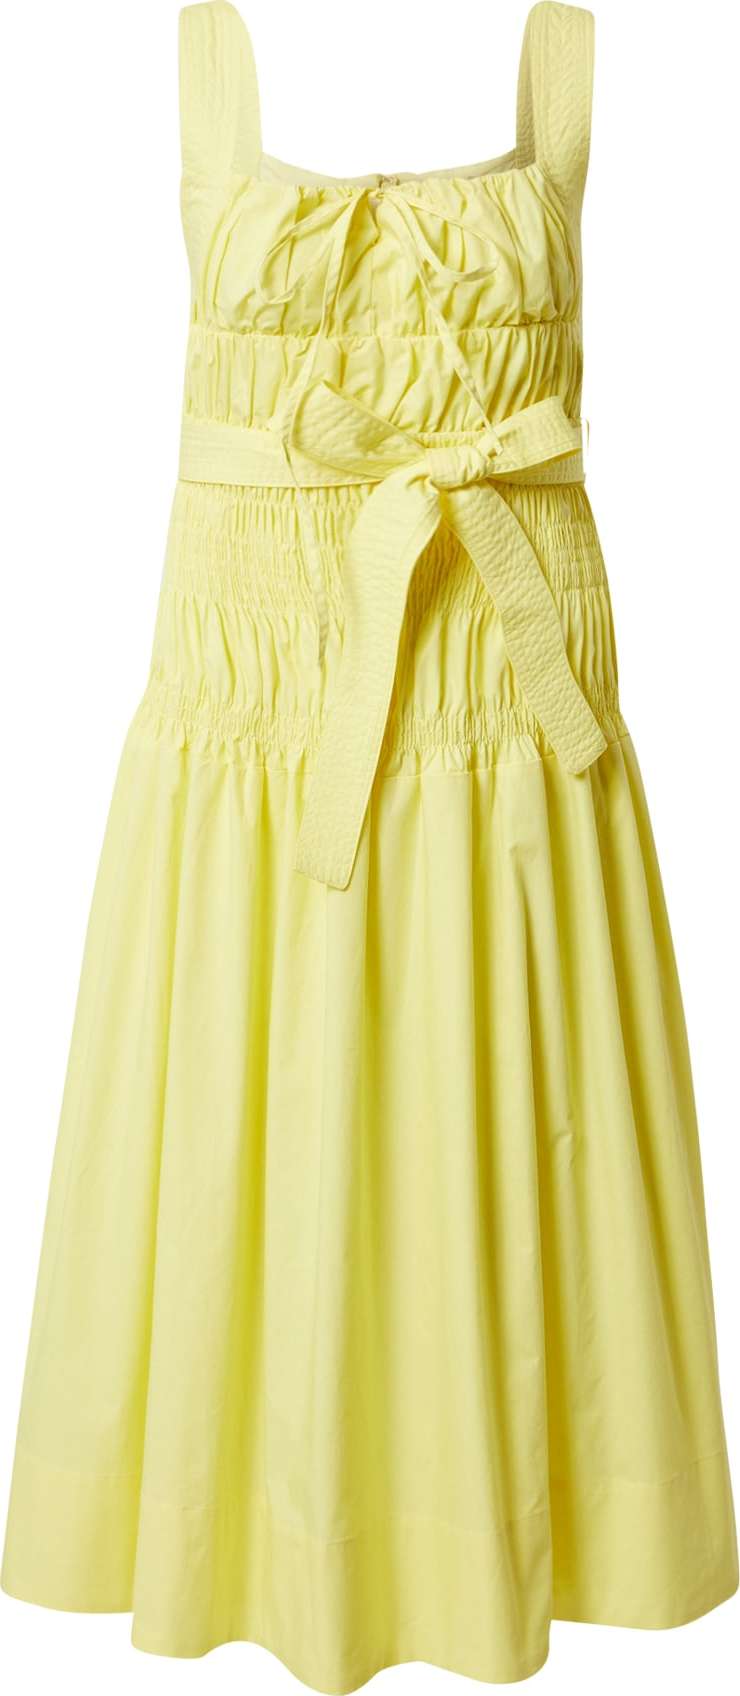 AMY LYNN Koktejlové šaty 'JUNO' žlutá